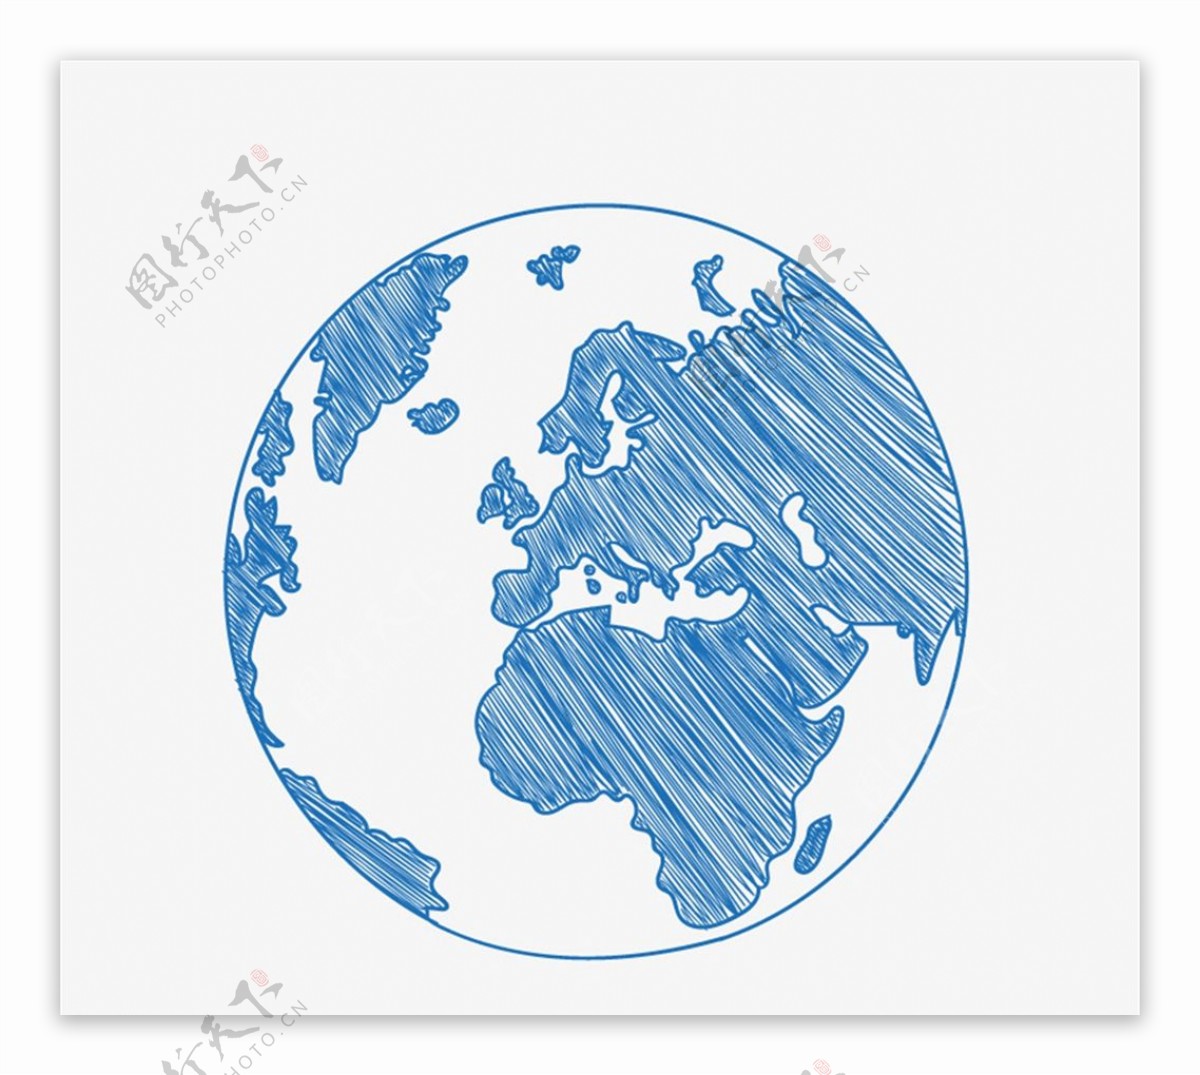 蓝色手绘地球图片